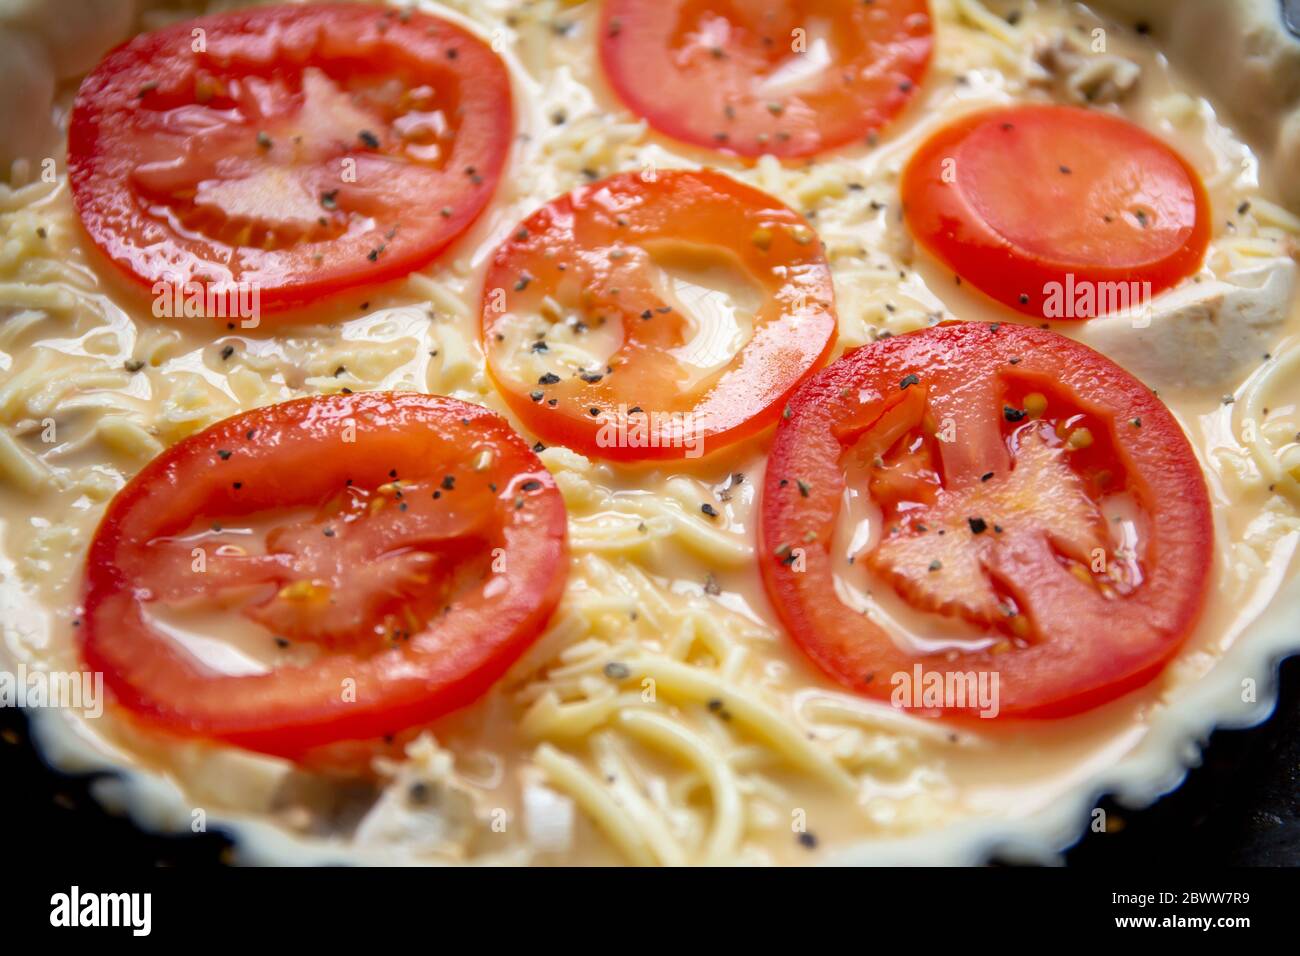 Le fromage non cuit et la tomate en forme de flan ont lu pour faire cuire Banque D'Images